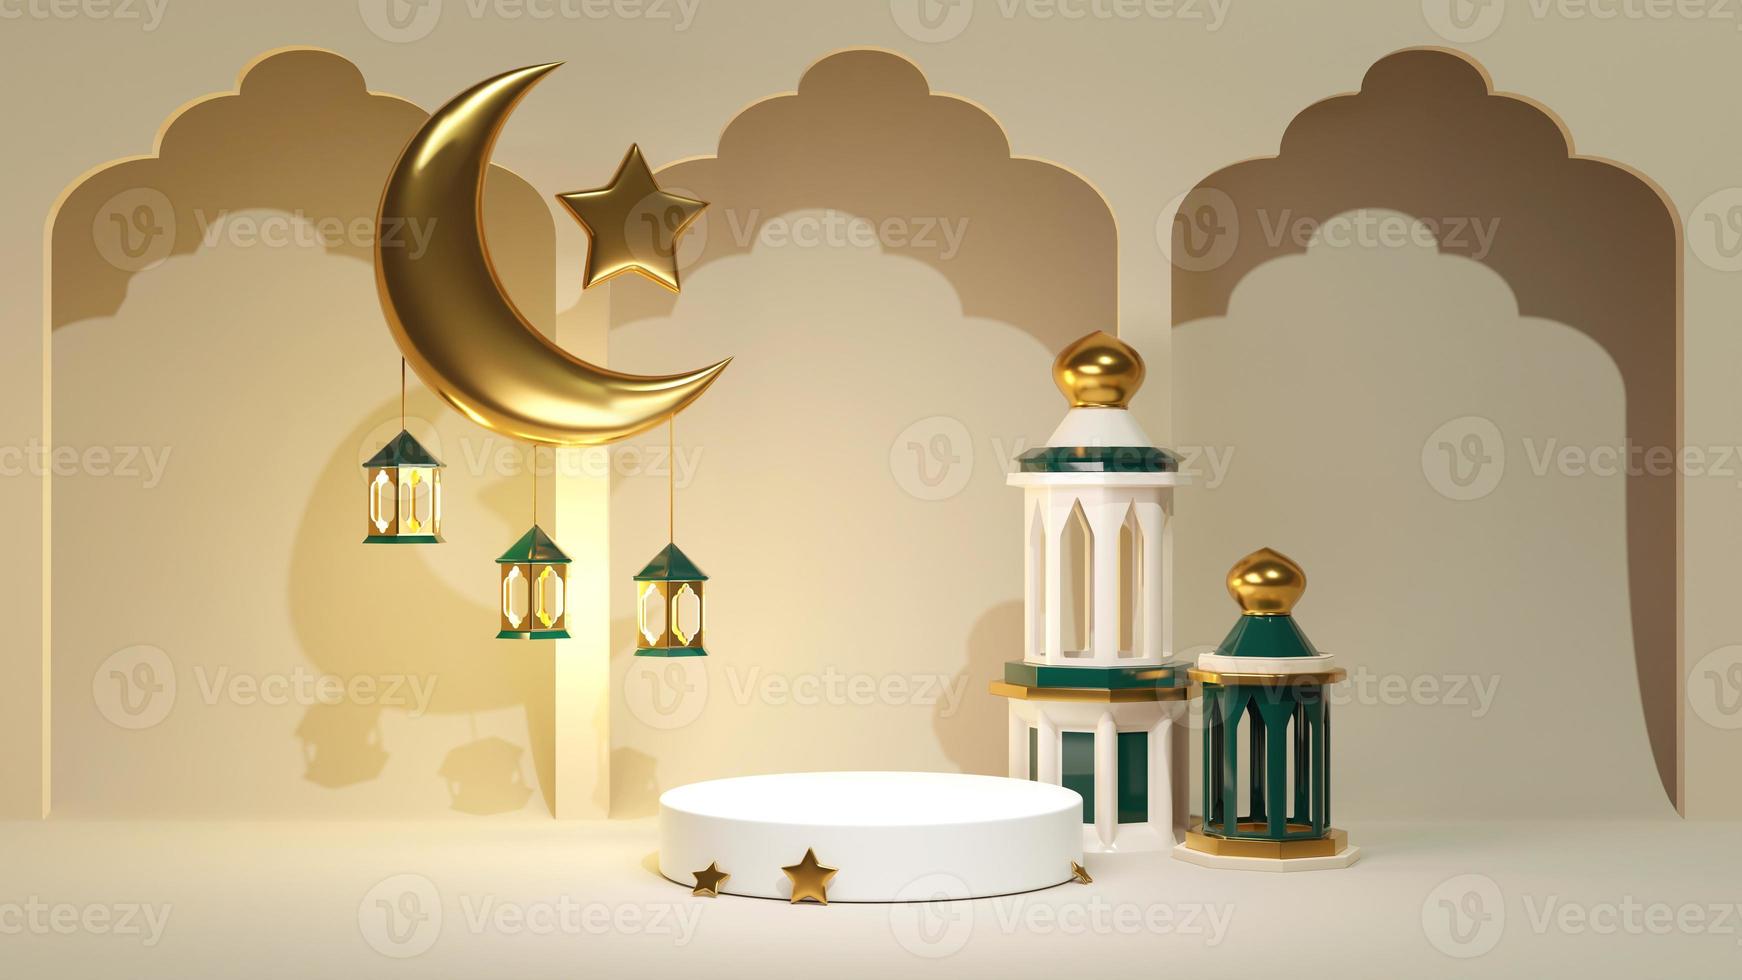 3d render fondo de celebración de ramadan kareem para banner publicitario. puesto de joyería con media luna dorada islámica y estrella con arco. decoración árabe y mezquita cerca del pedestal de exhibición de productos foto